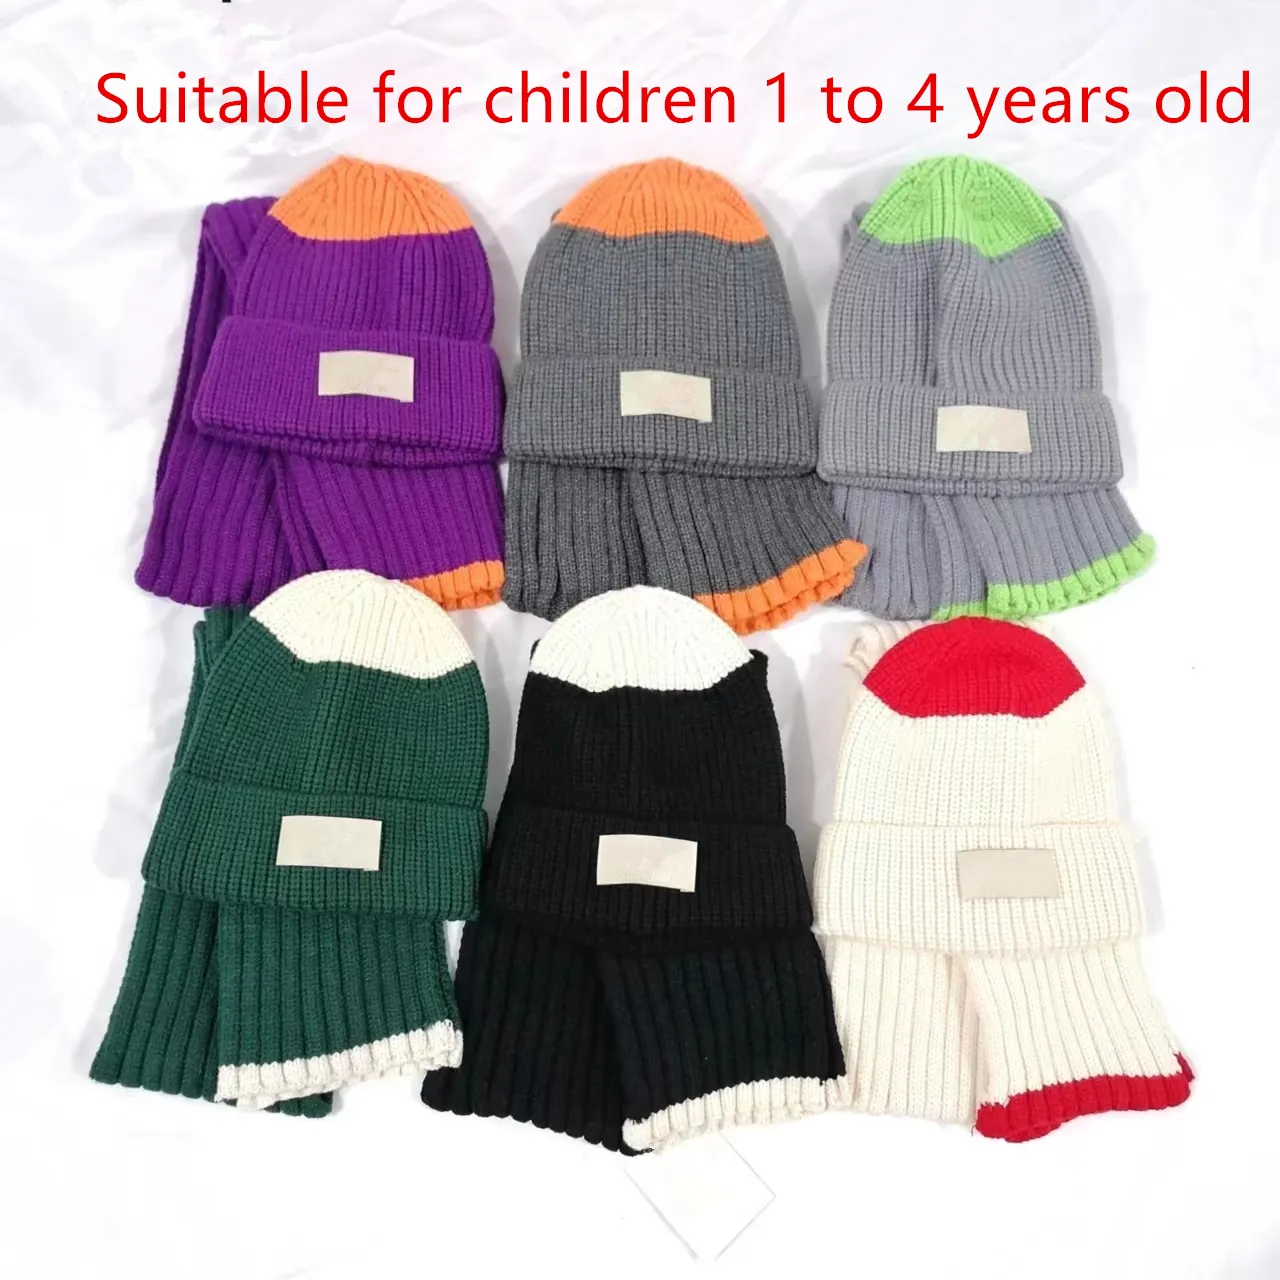 Ensemble de bonnets écharpe chauds d'hiver pour enfants, costume chapeau et écharpe, bonnet de créateur de mode adapté aux enfants de 1 à 4 ans